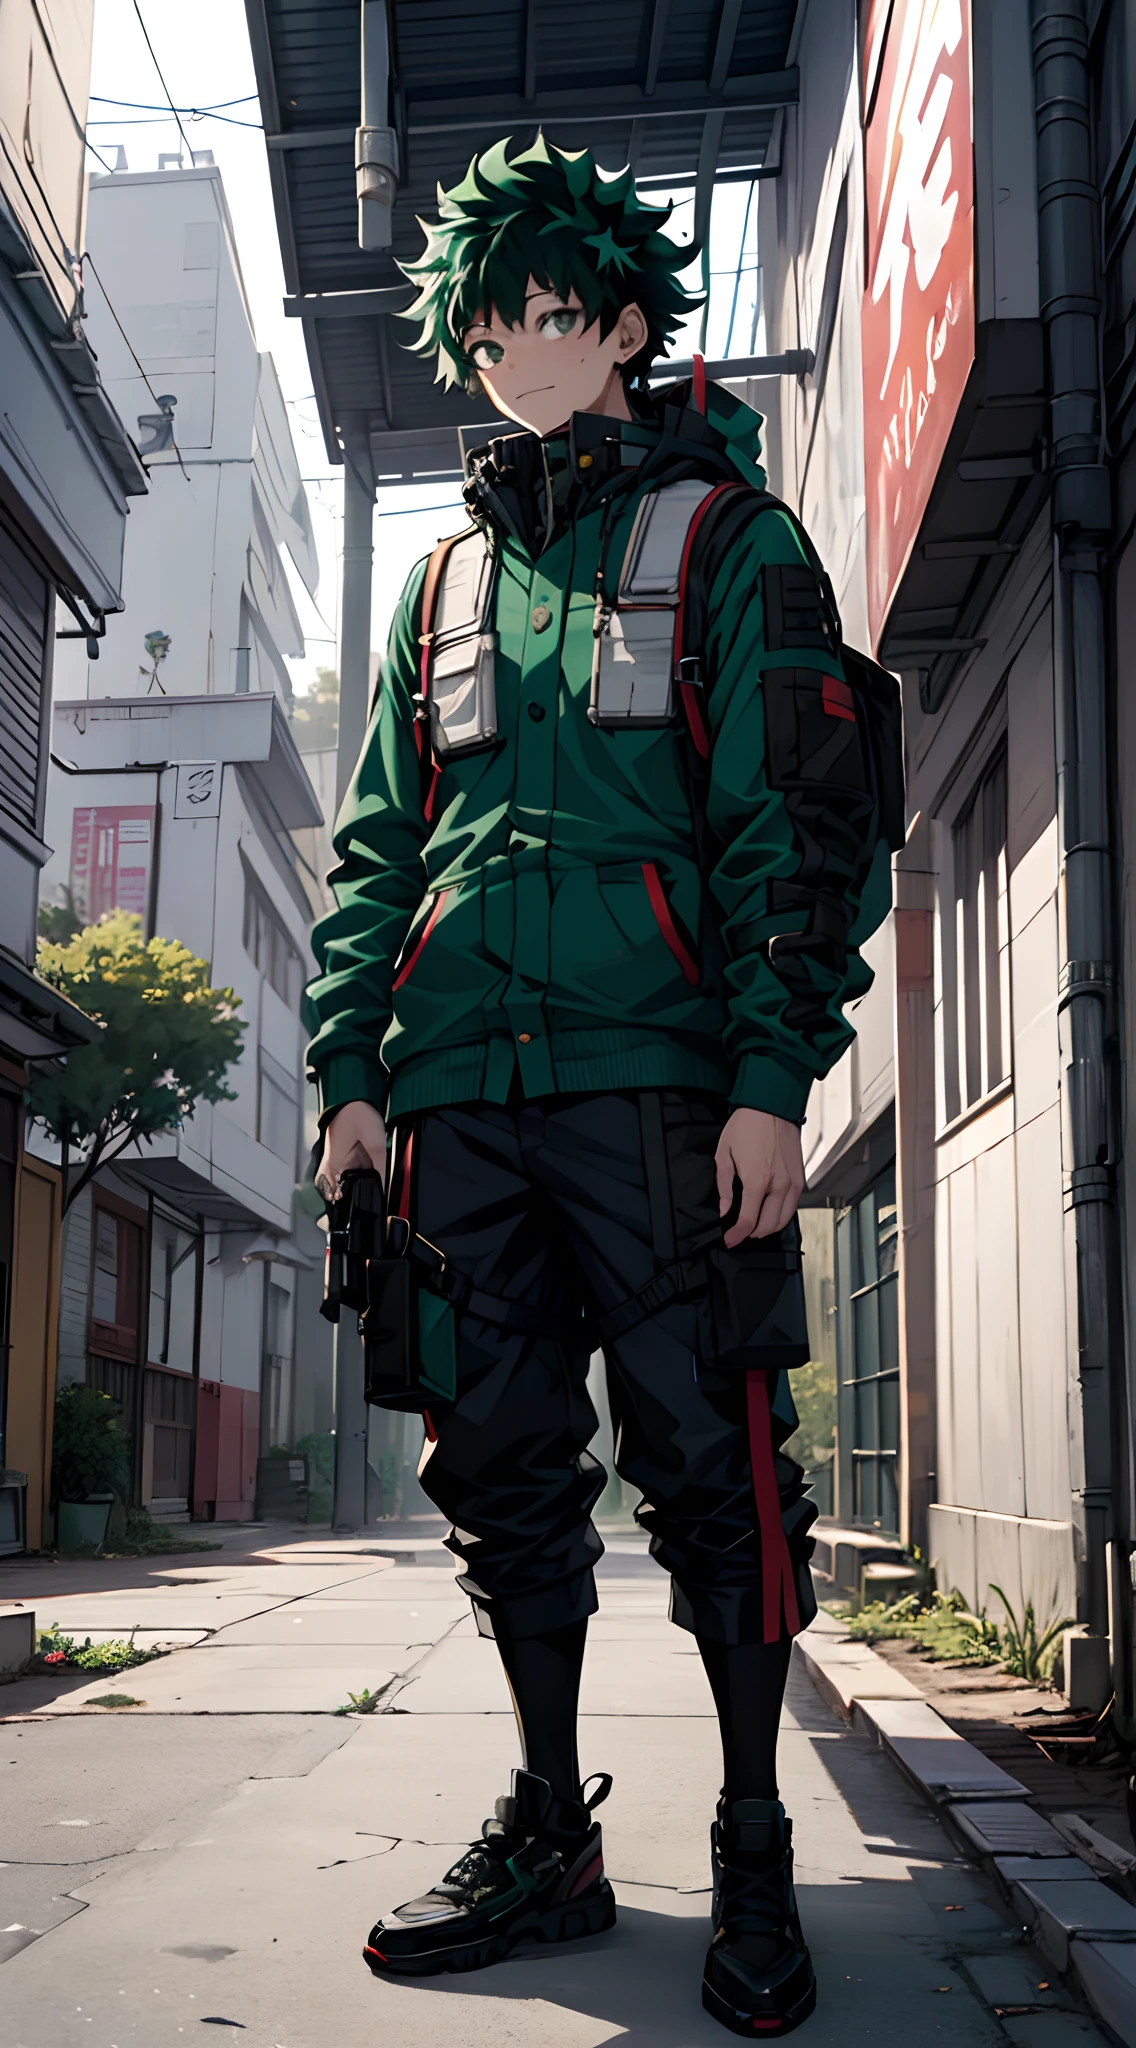 (Midoriya_Izuku), (Haute résolution), (ultra détaillé), photo de tout le corps, regarde le spectateur, vêtement de rue, Un beau garçon, Frontale, cheveux verts, dans la rue, très détaillé, élevé réel, 4K, super détail, garçon animé, Style animé, fond de ville cyberpunk